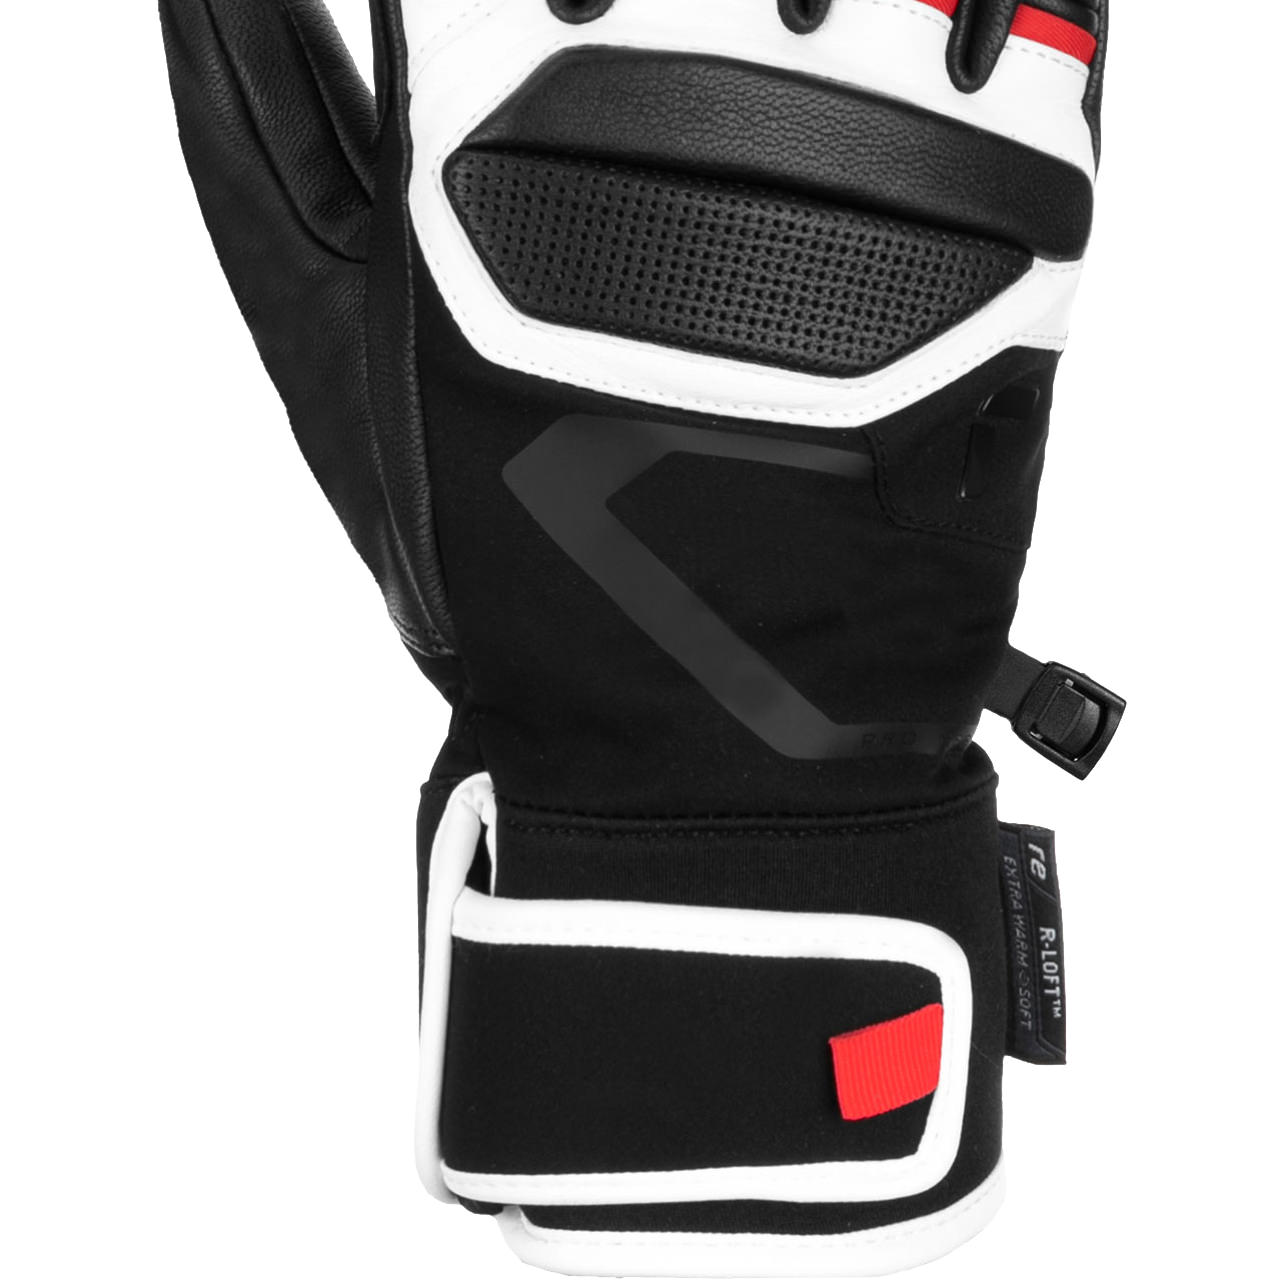 Reusch Men Glove red PRO black/white/fire skiwear | Alpine |Men Skis RC | Skiwear